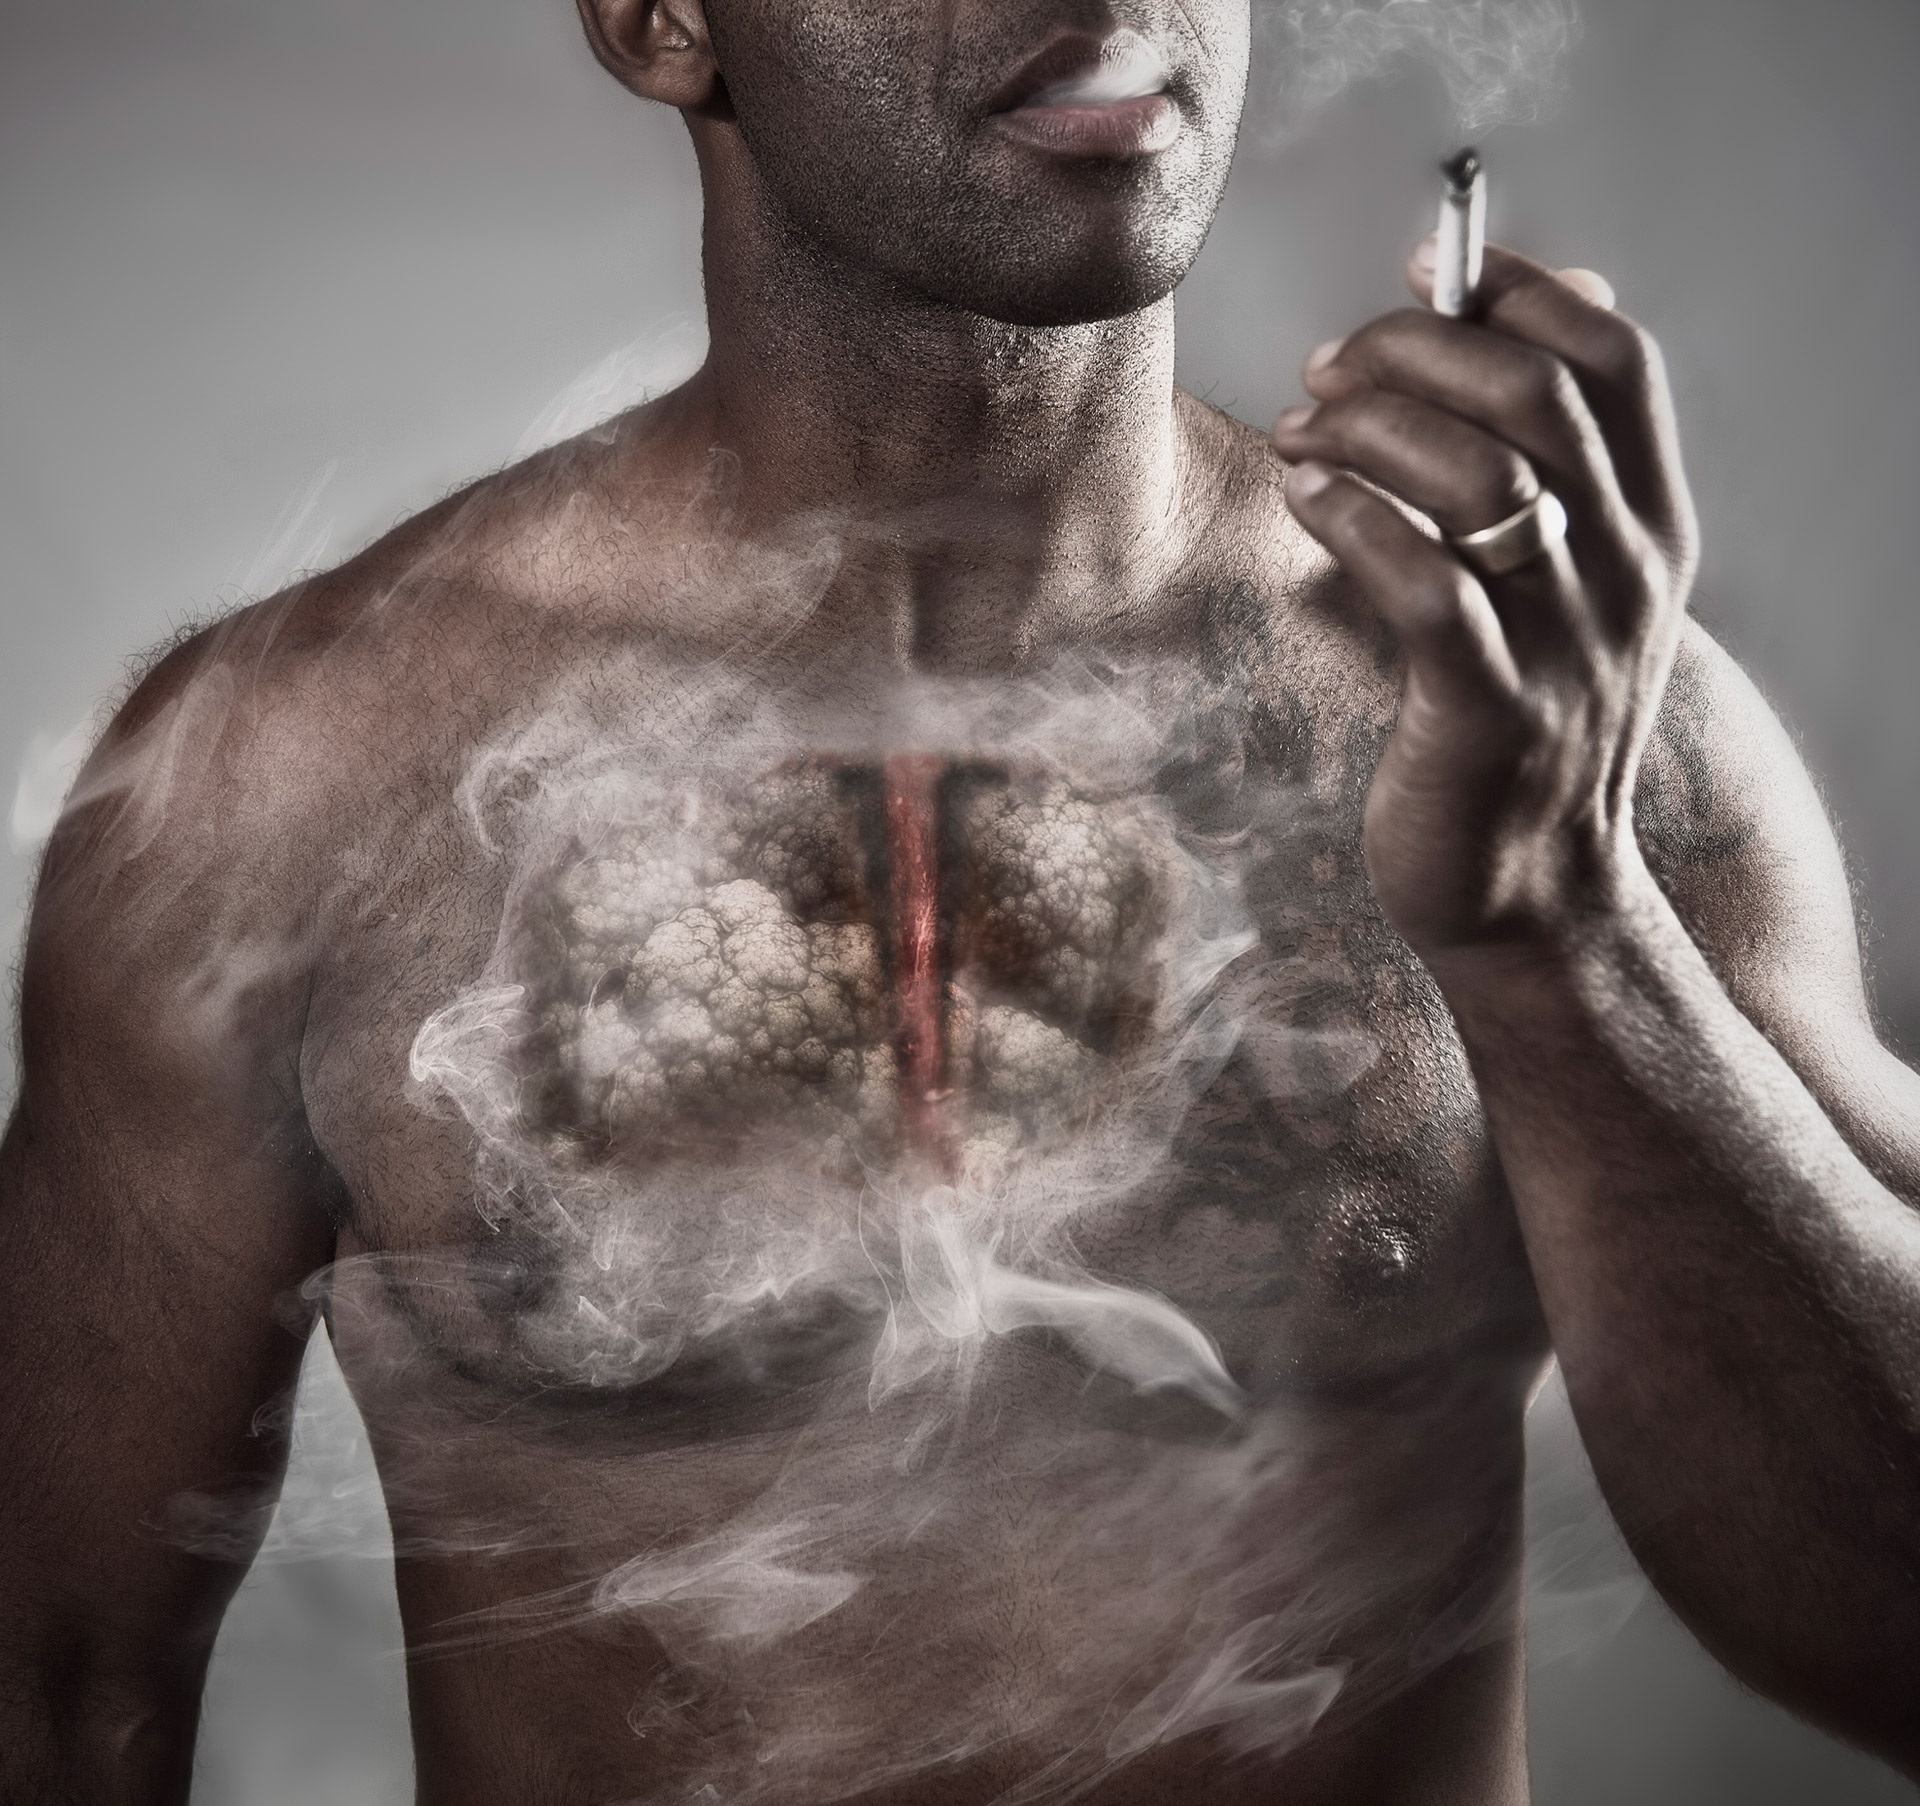 El tabaquismos es la principal causa de cáncer de pulmón